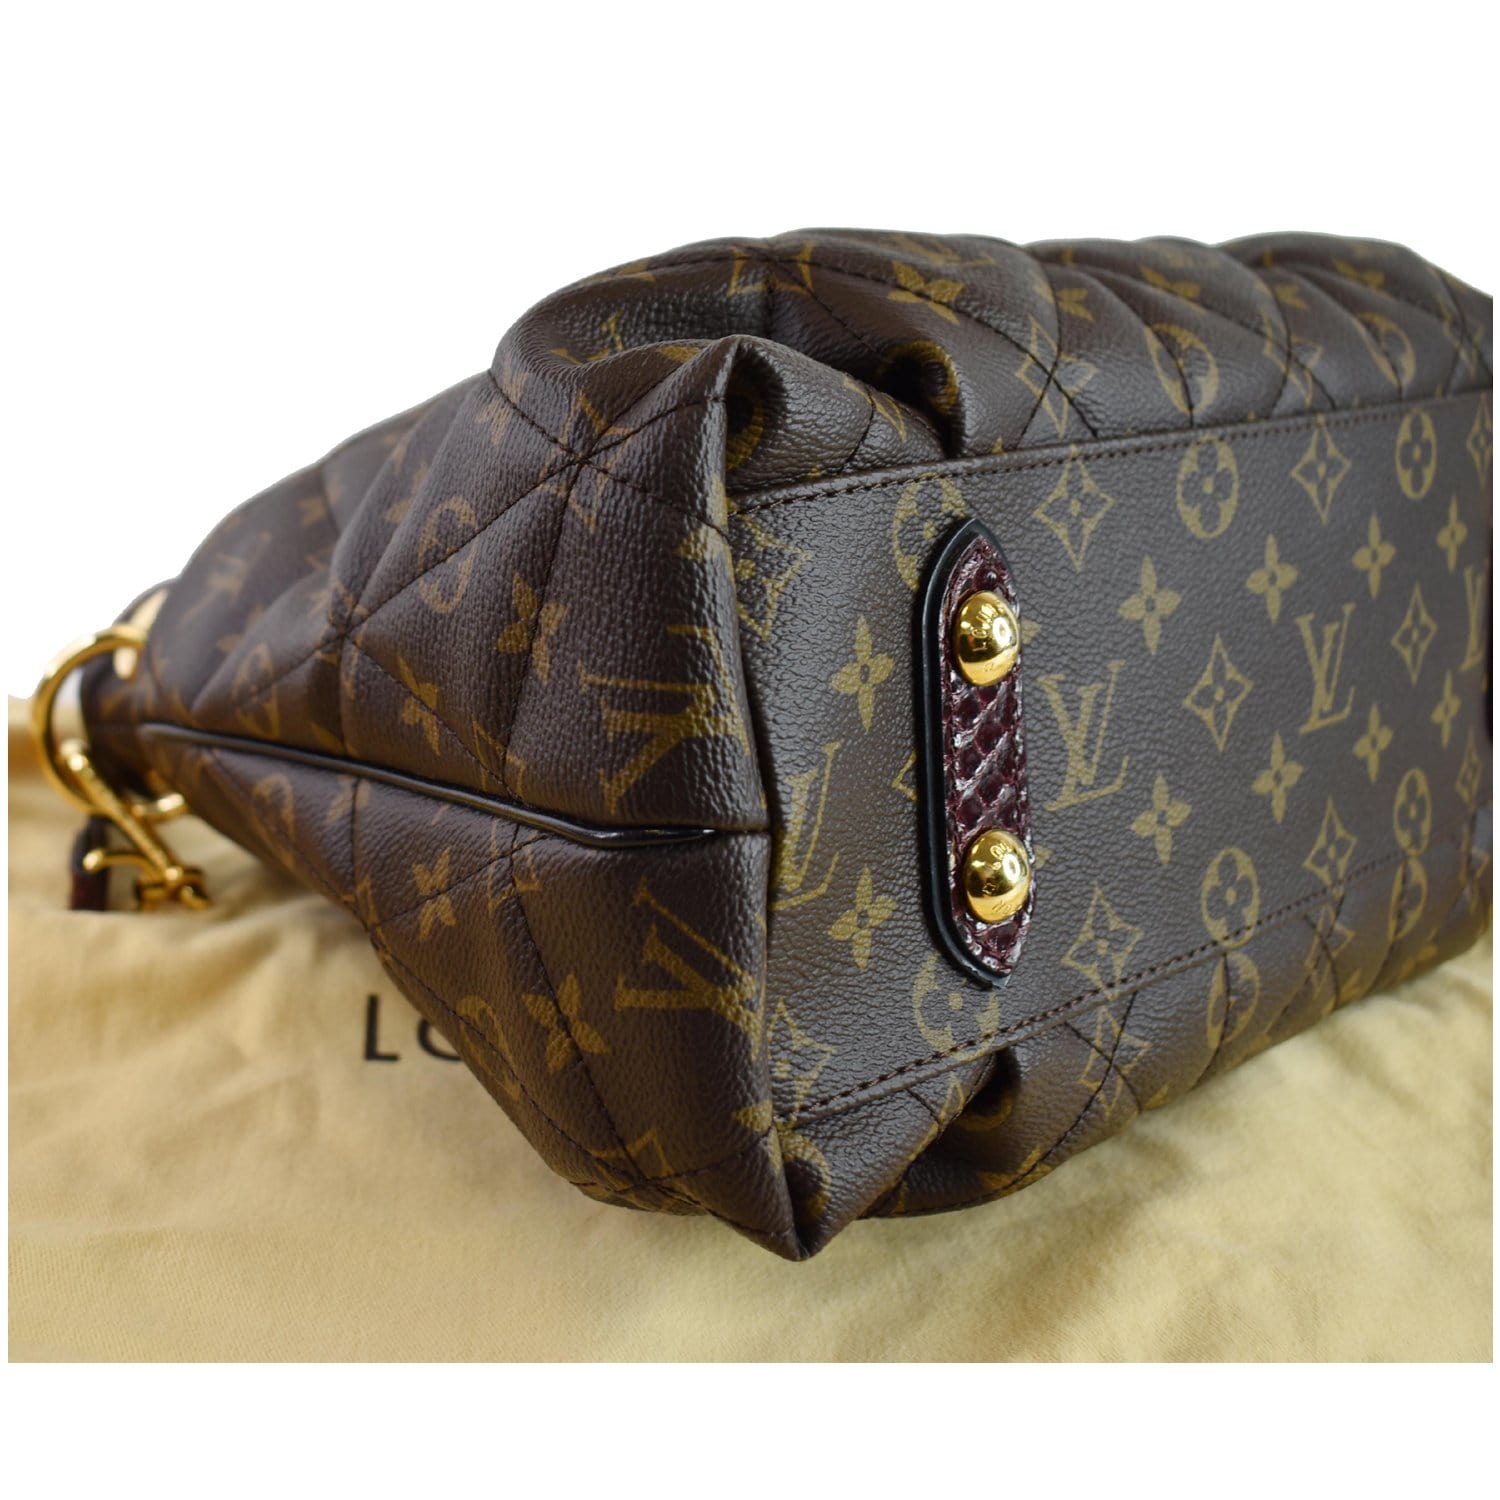 Etoile cloth handbag Louis Vuitton Brown in Cloth - 31634912